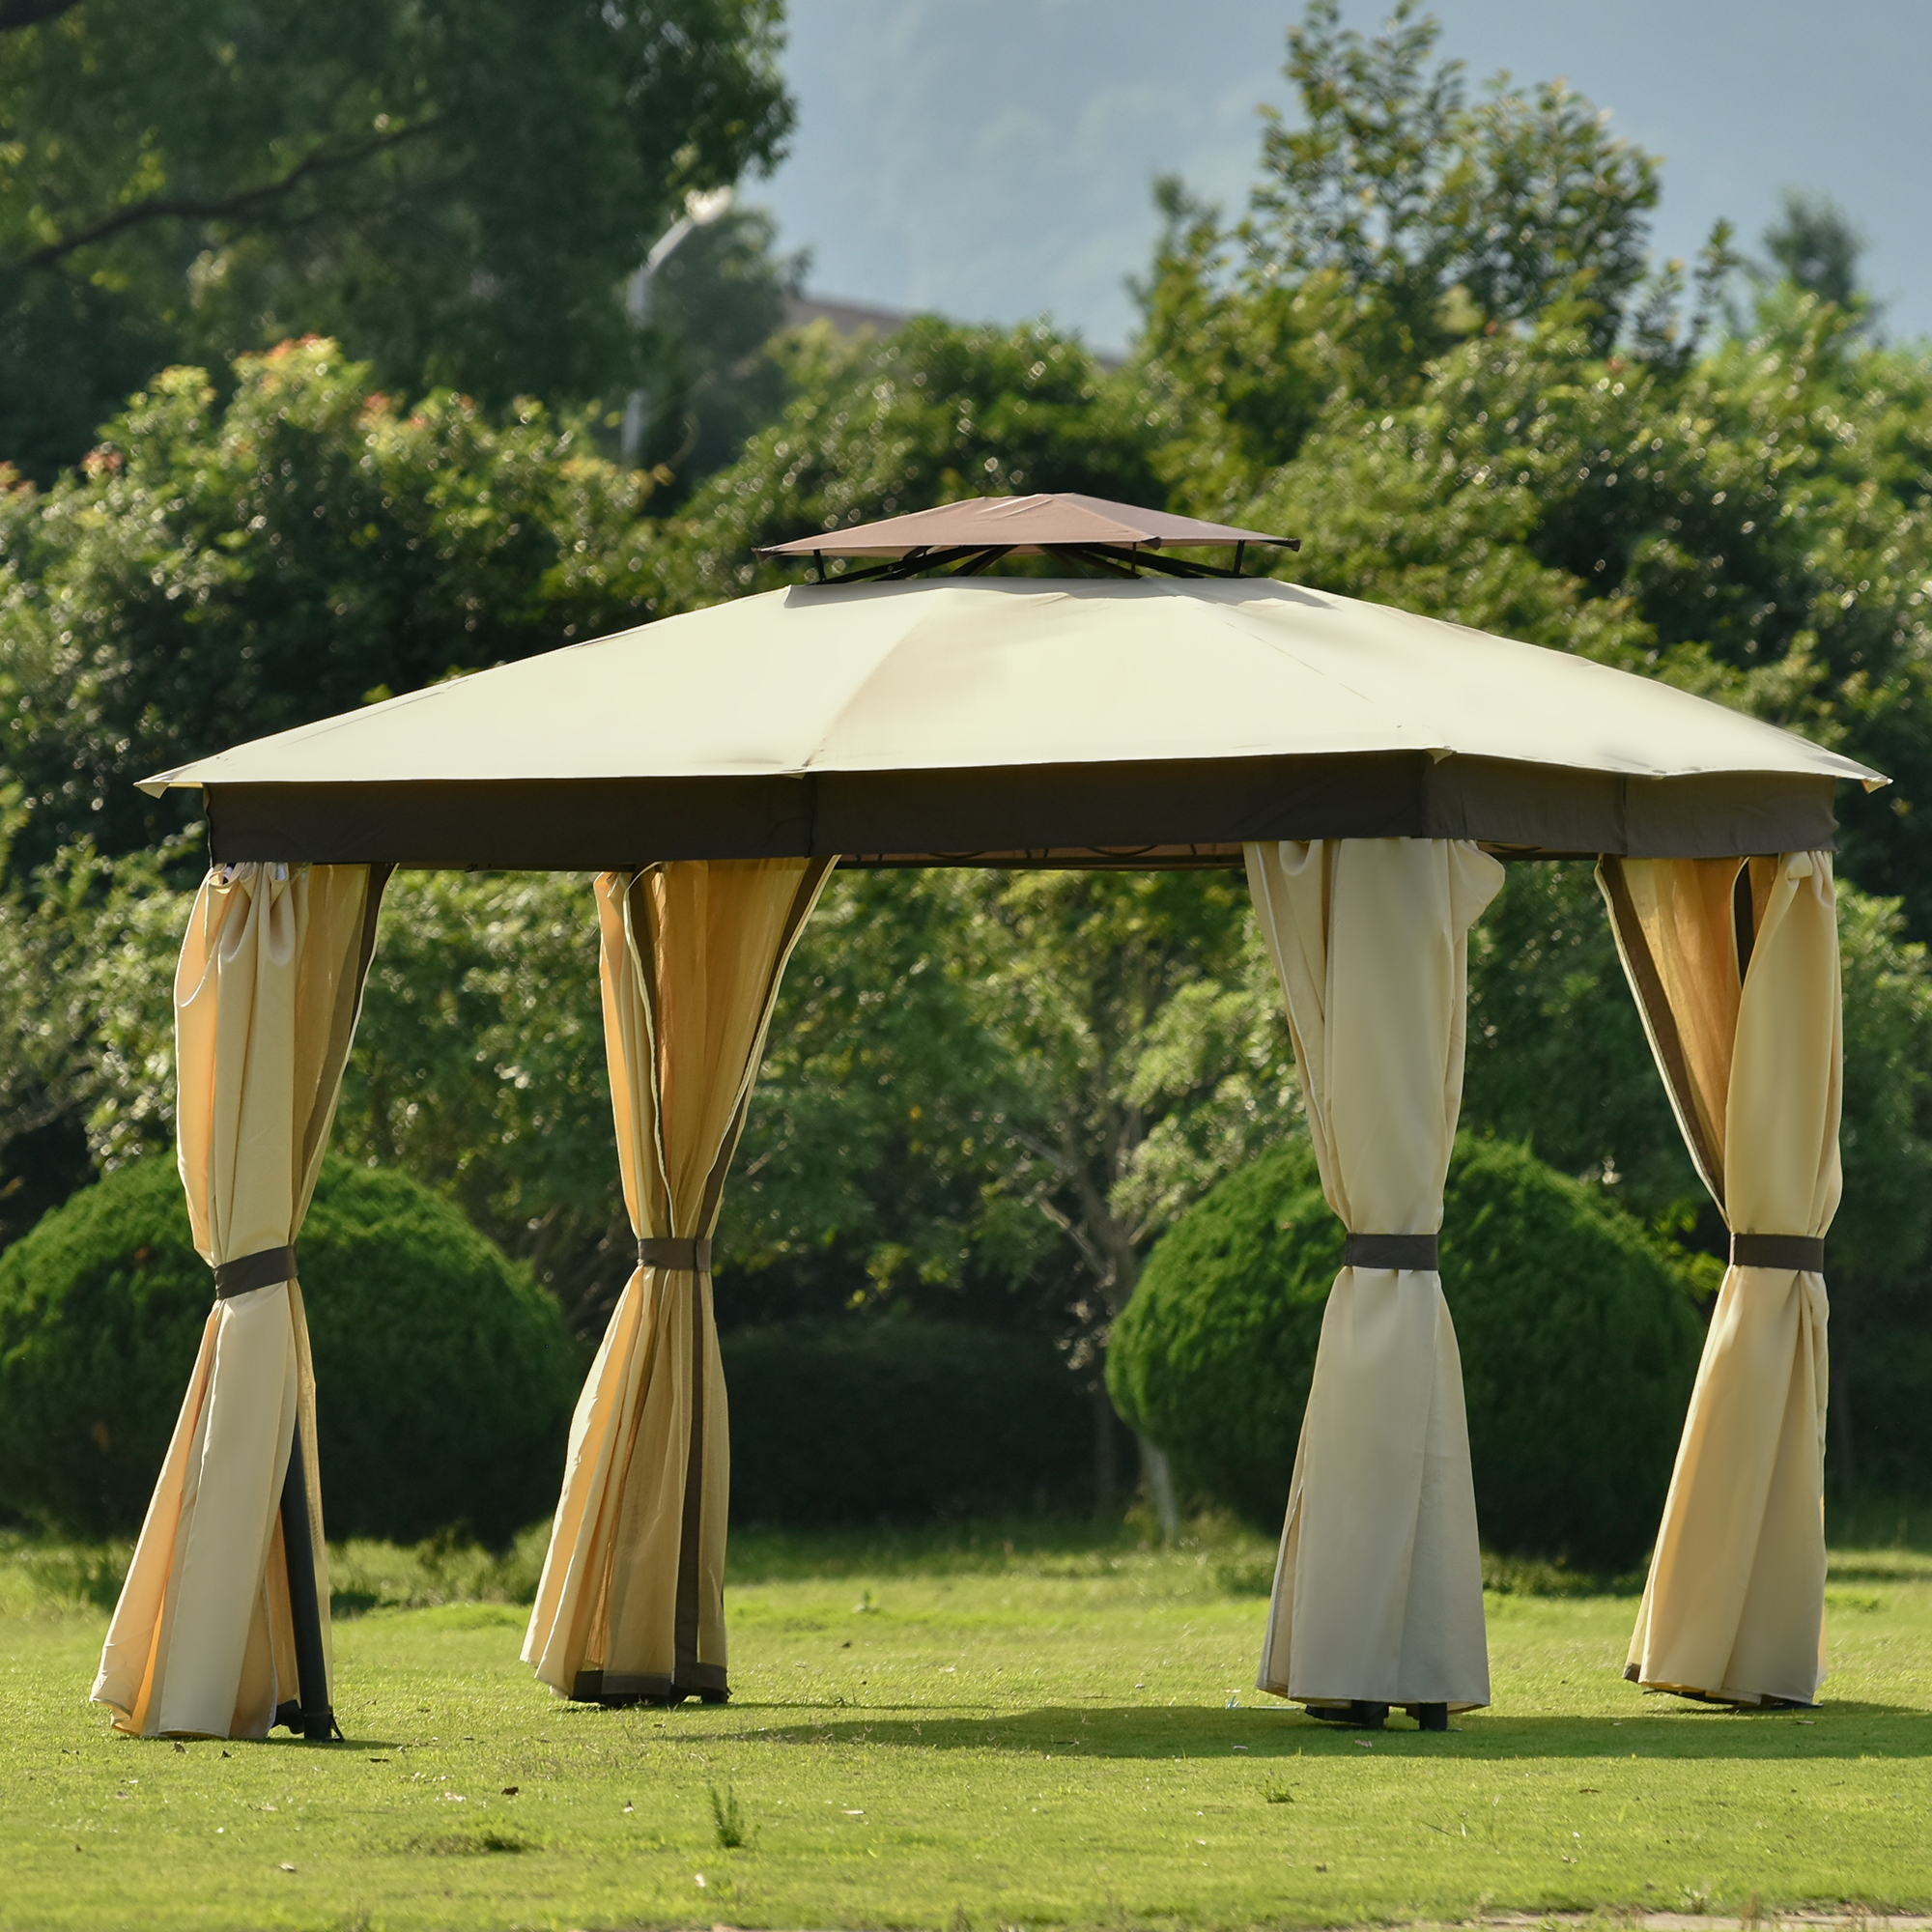 U-style Gazebo Canopy Soft Top Outdoor Patio Gazebo Tent Garden Canopy for Your Yard, Patio, Garden, Outdoor or Party-CASAINC